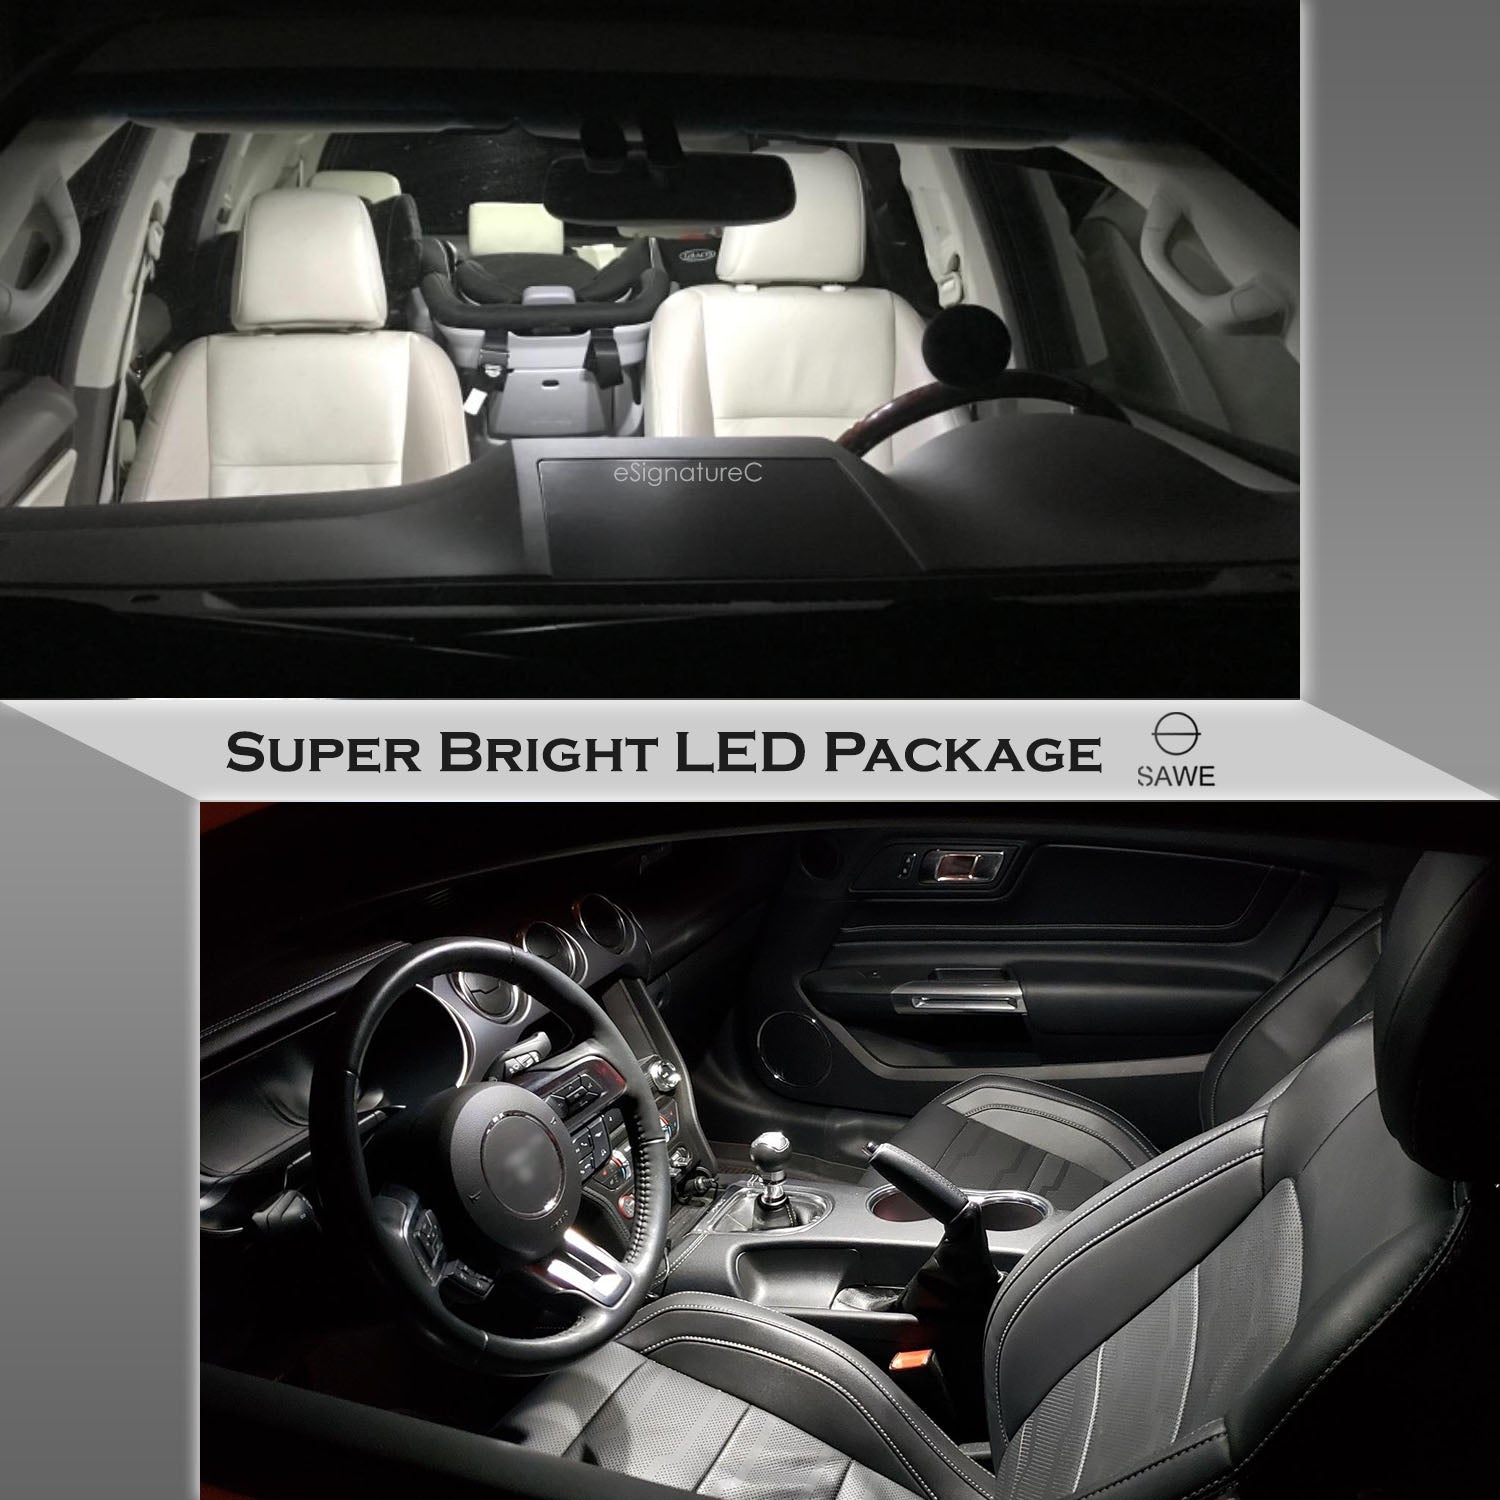 For Volkswagen Touareg Interior LED Lights - Dome & Map Light Bulbs Package Kit for 2011 - 2017 - White